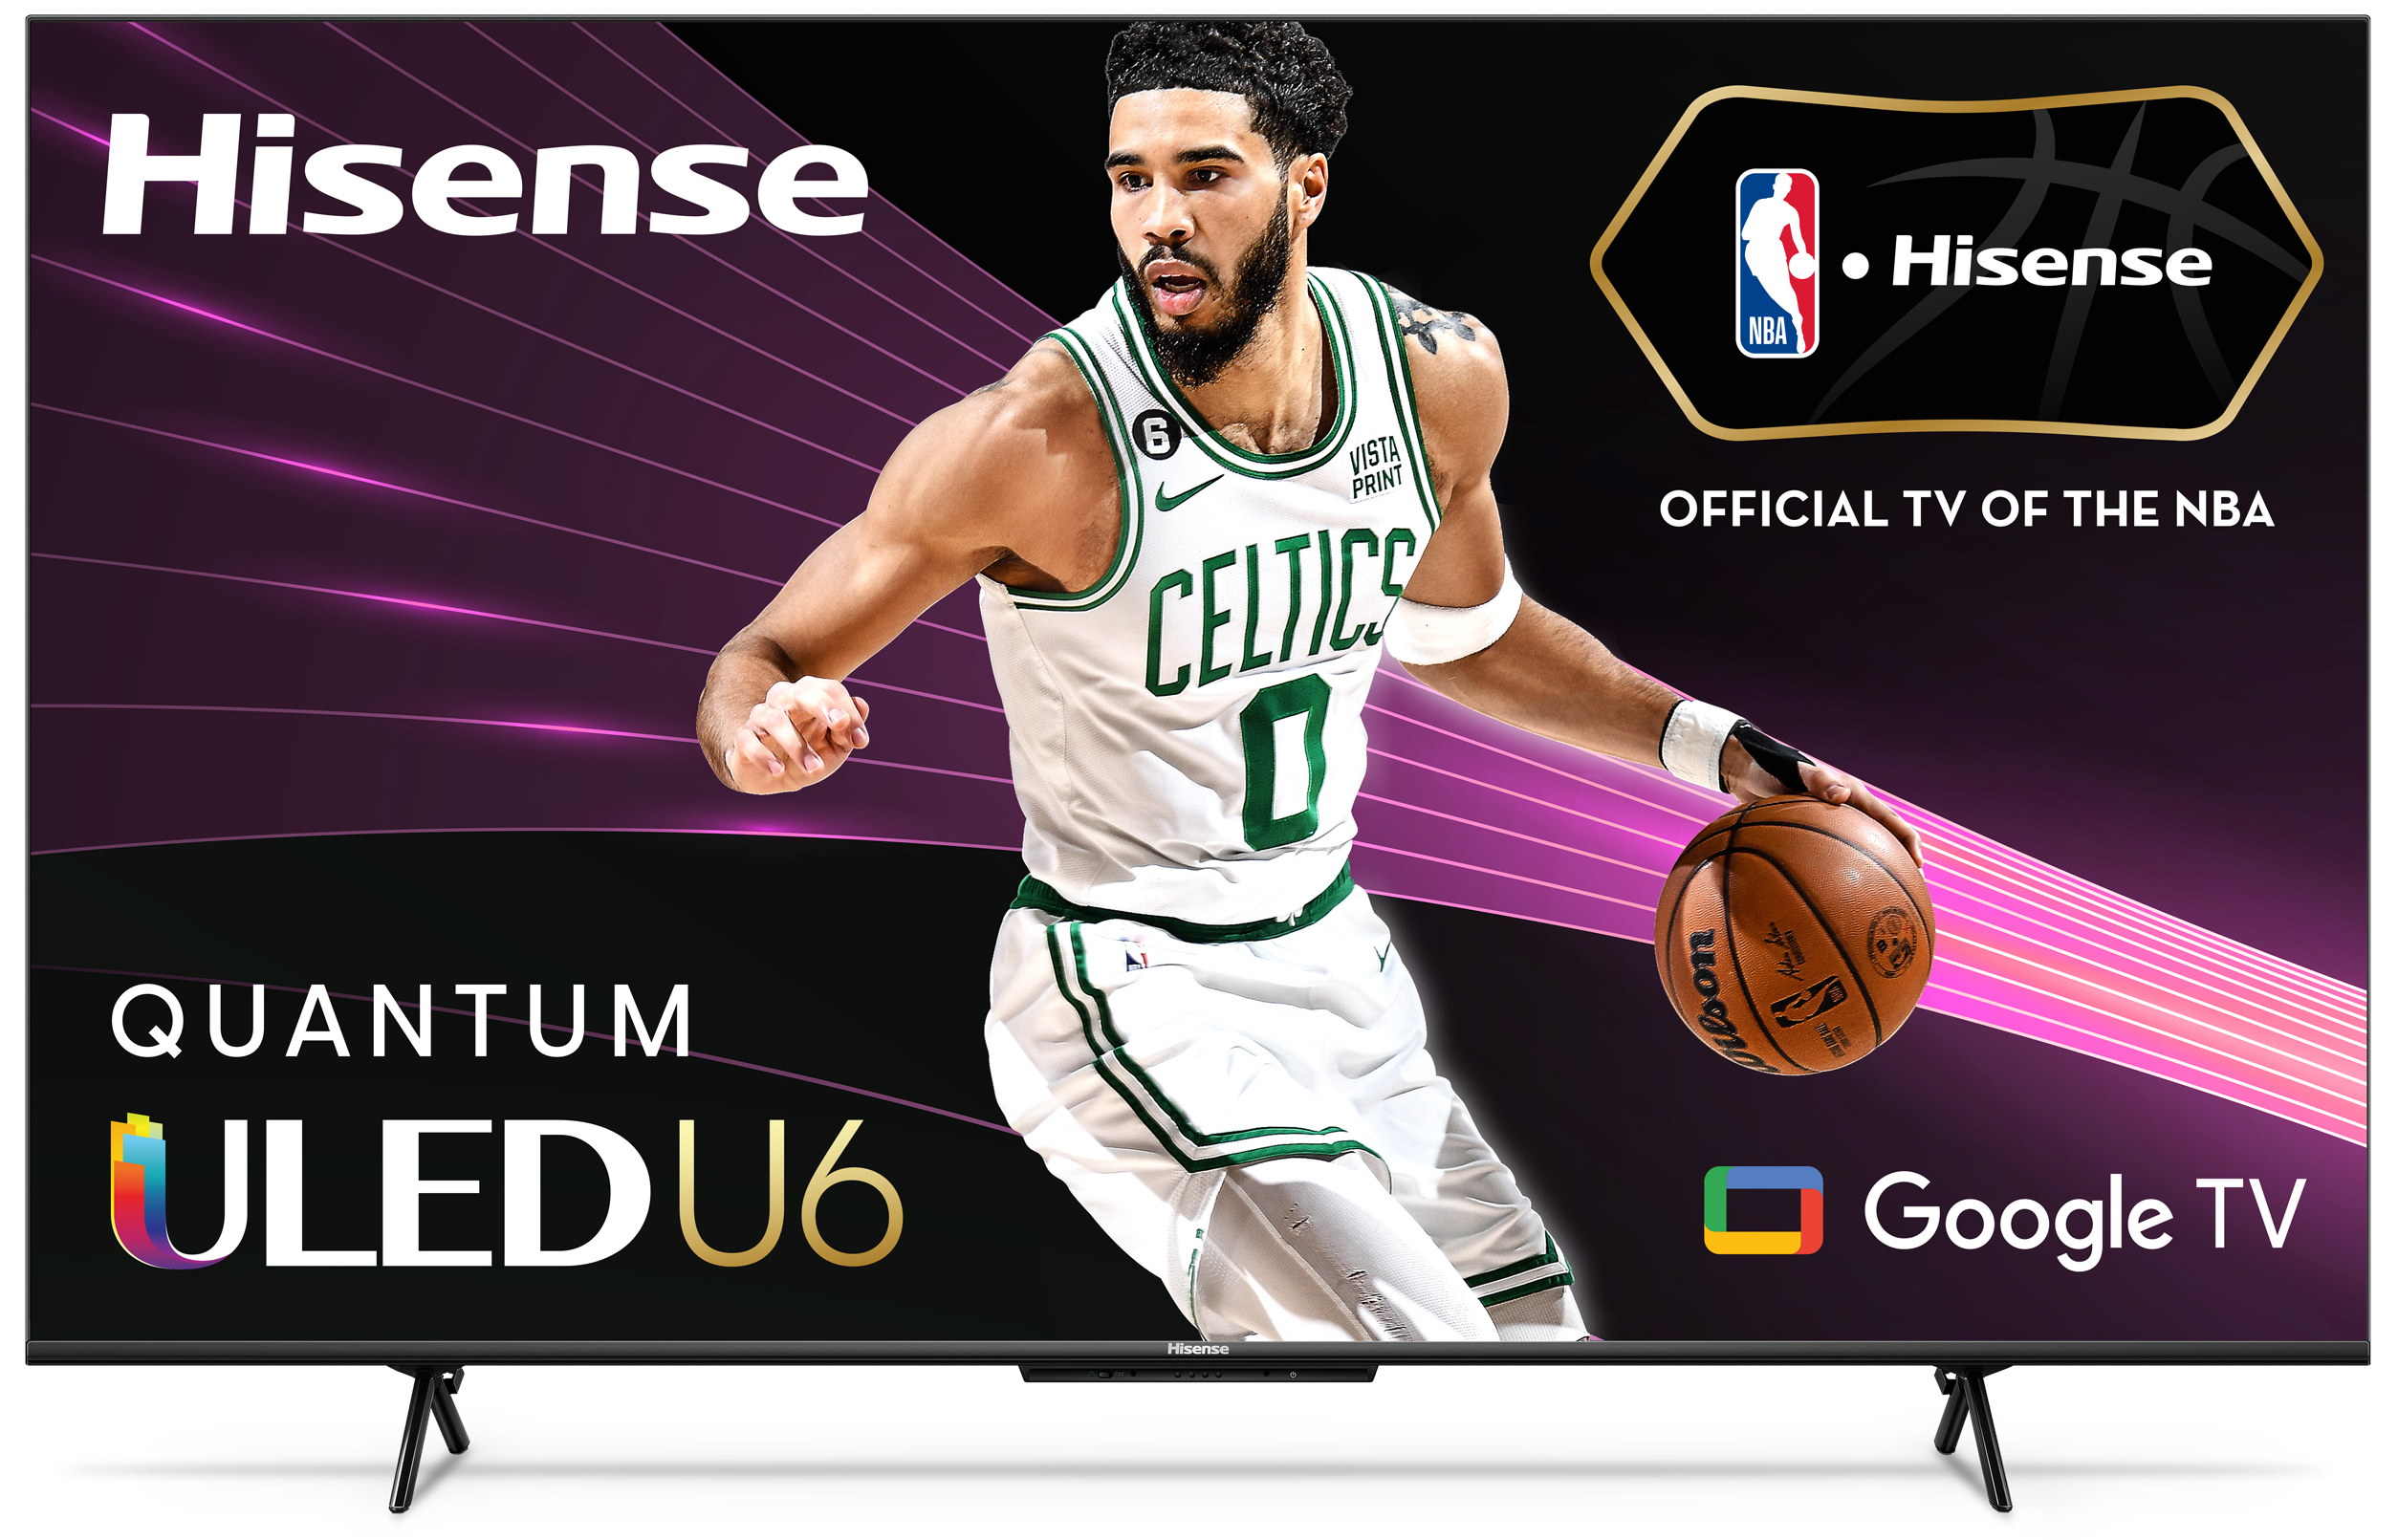 Hisense - 65" Class ULED U6H Series Quantum Dot QLED 4K UHD Smart Google TV (65U6H) - image 1 of 10